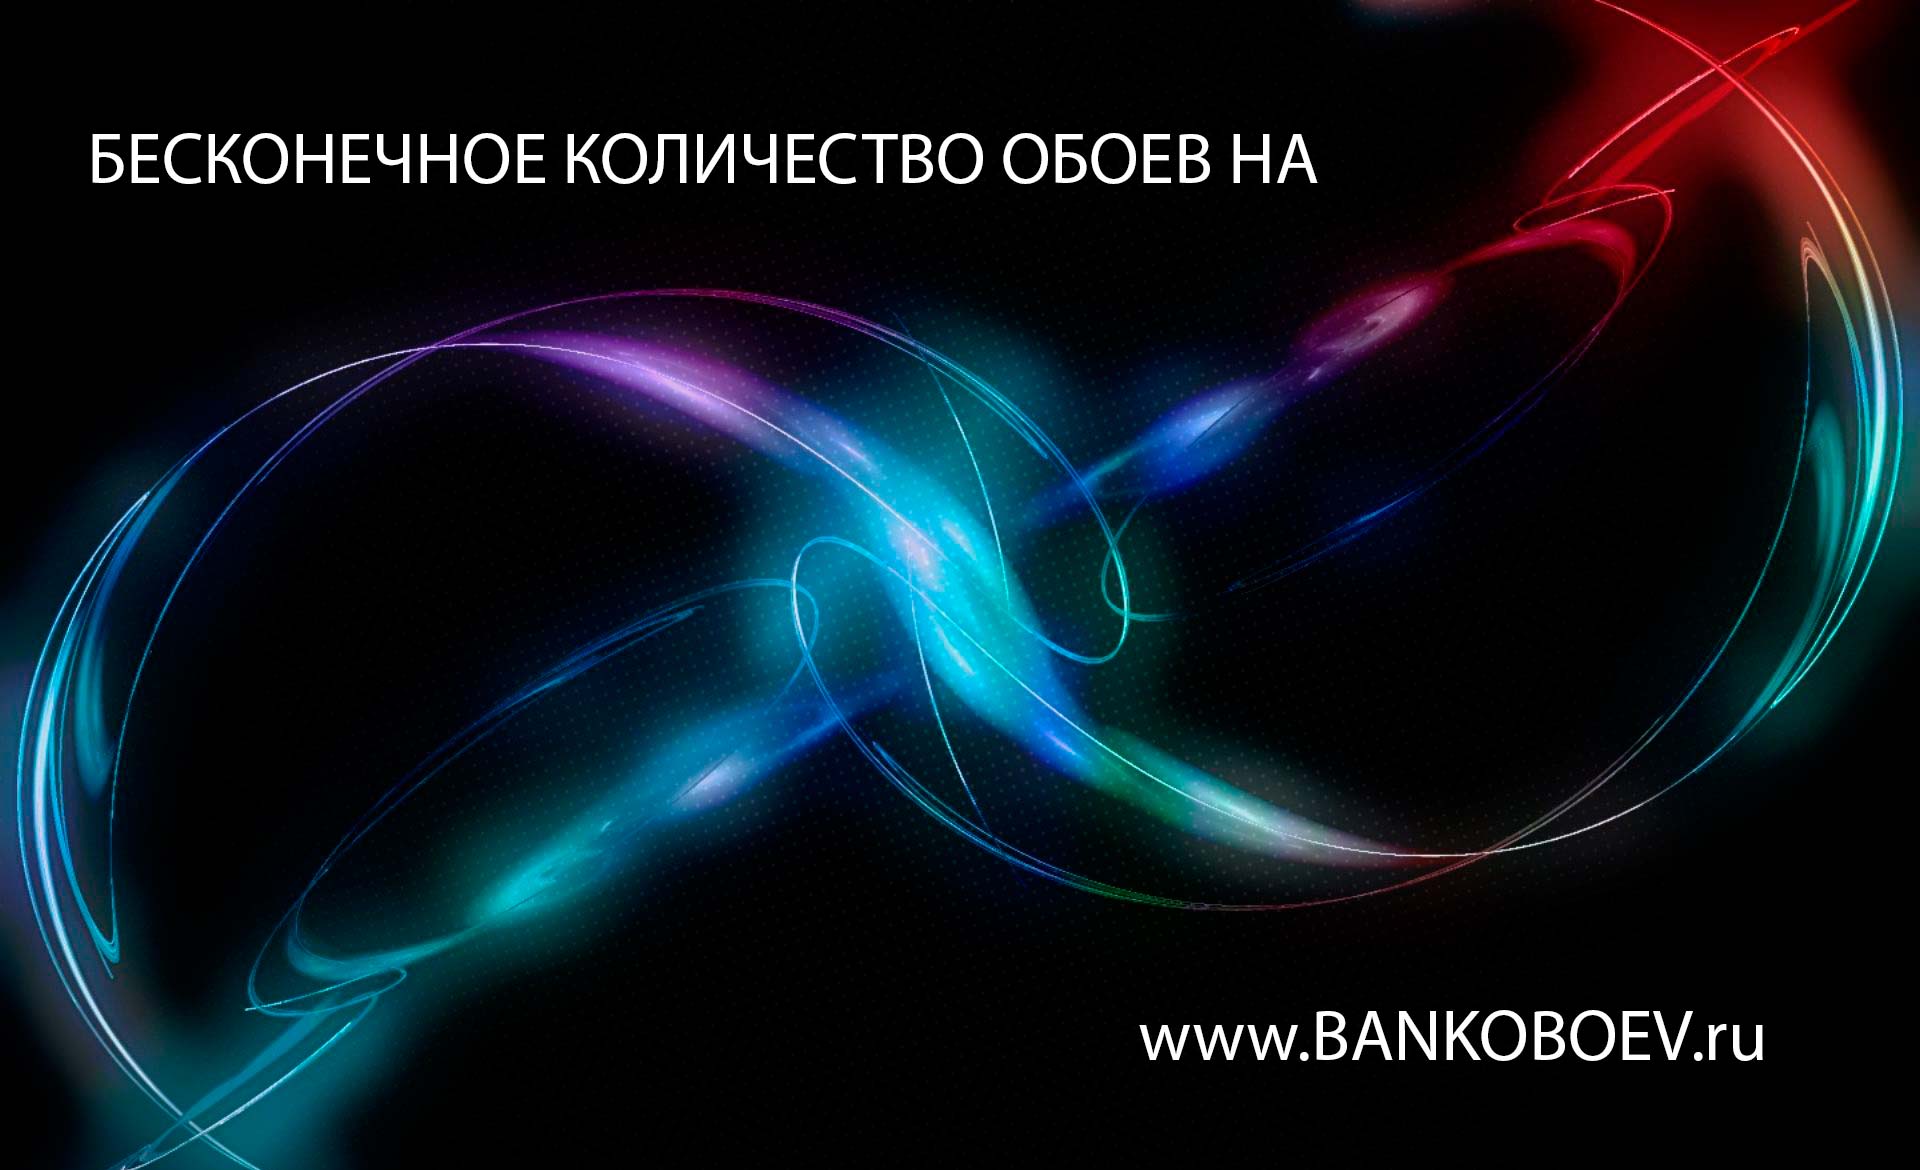 Bankoboev Ru Image Odyxodu Jpg